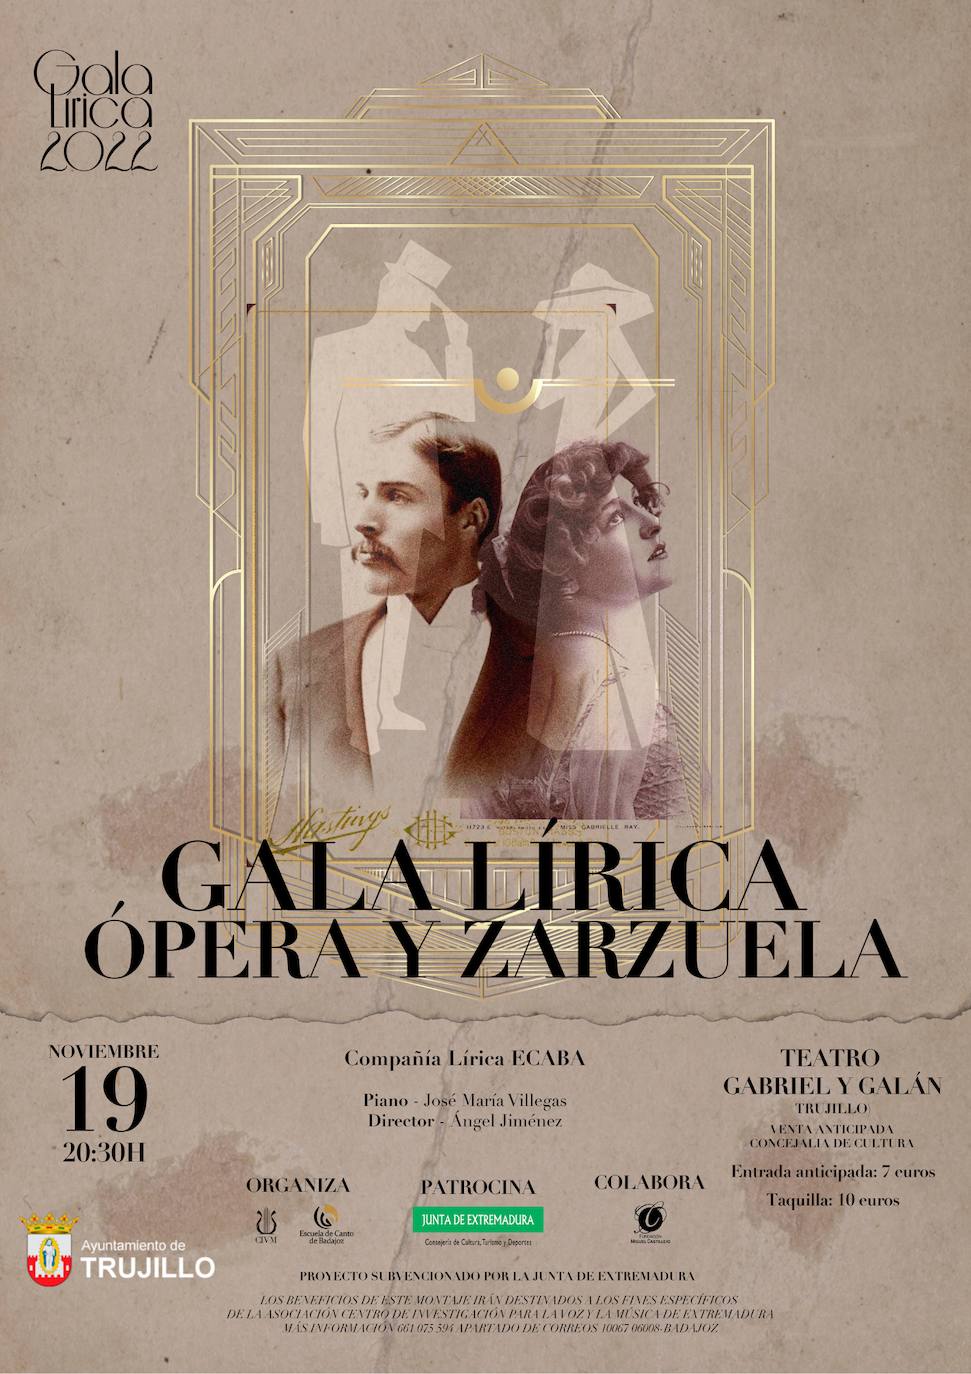 La Gala Lírica tendrá lugar el sábado en el Gabriel y Galán